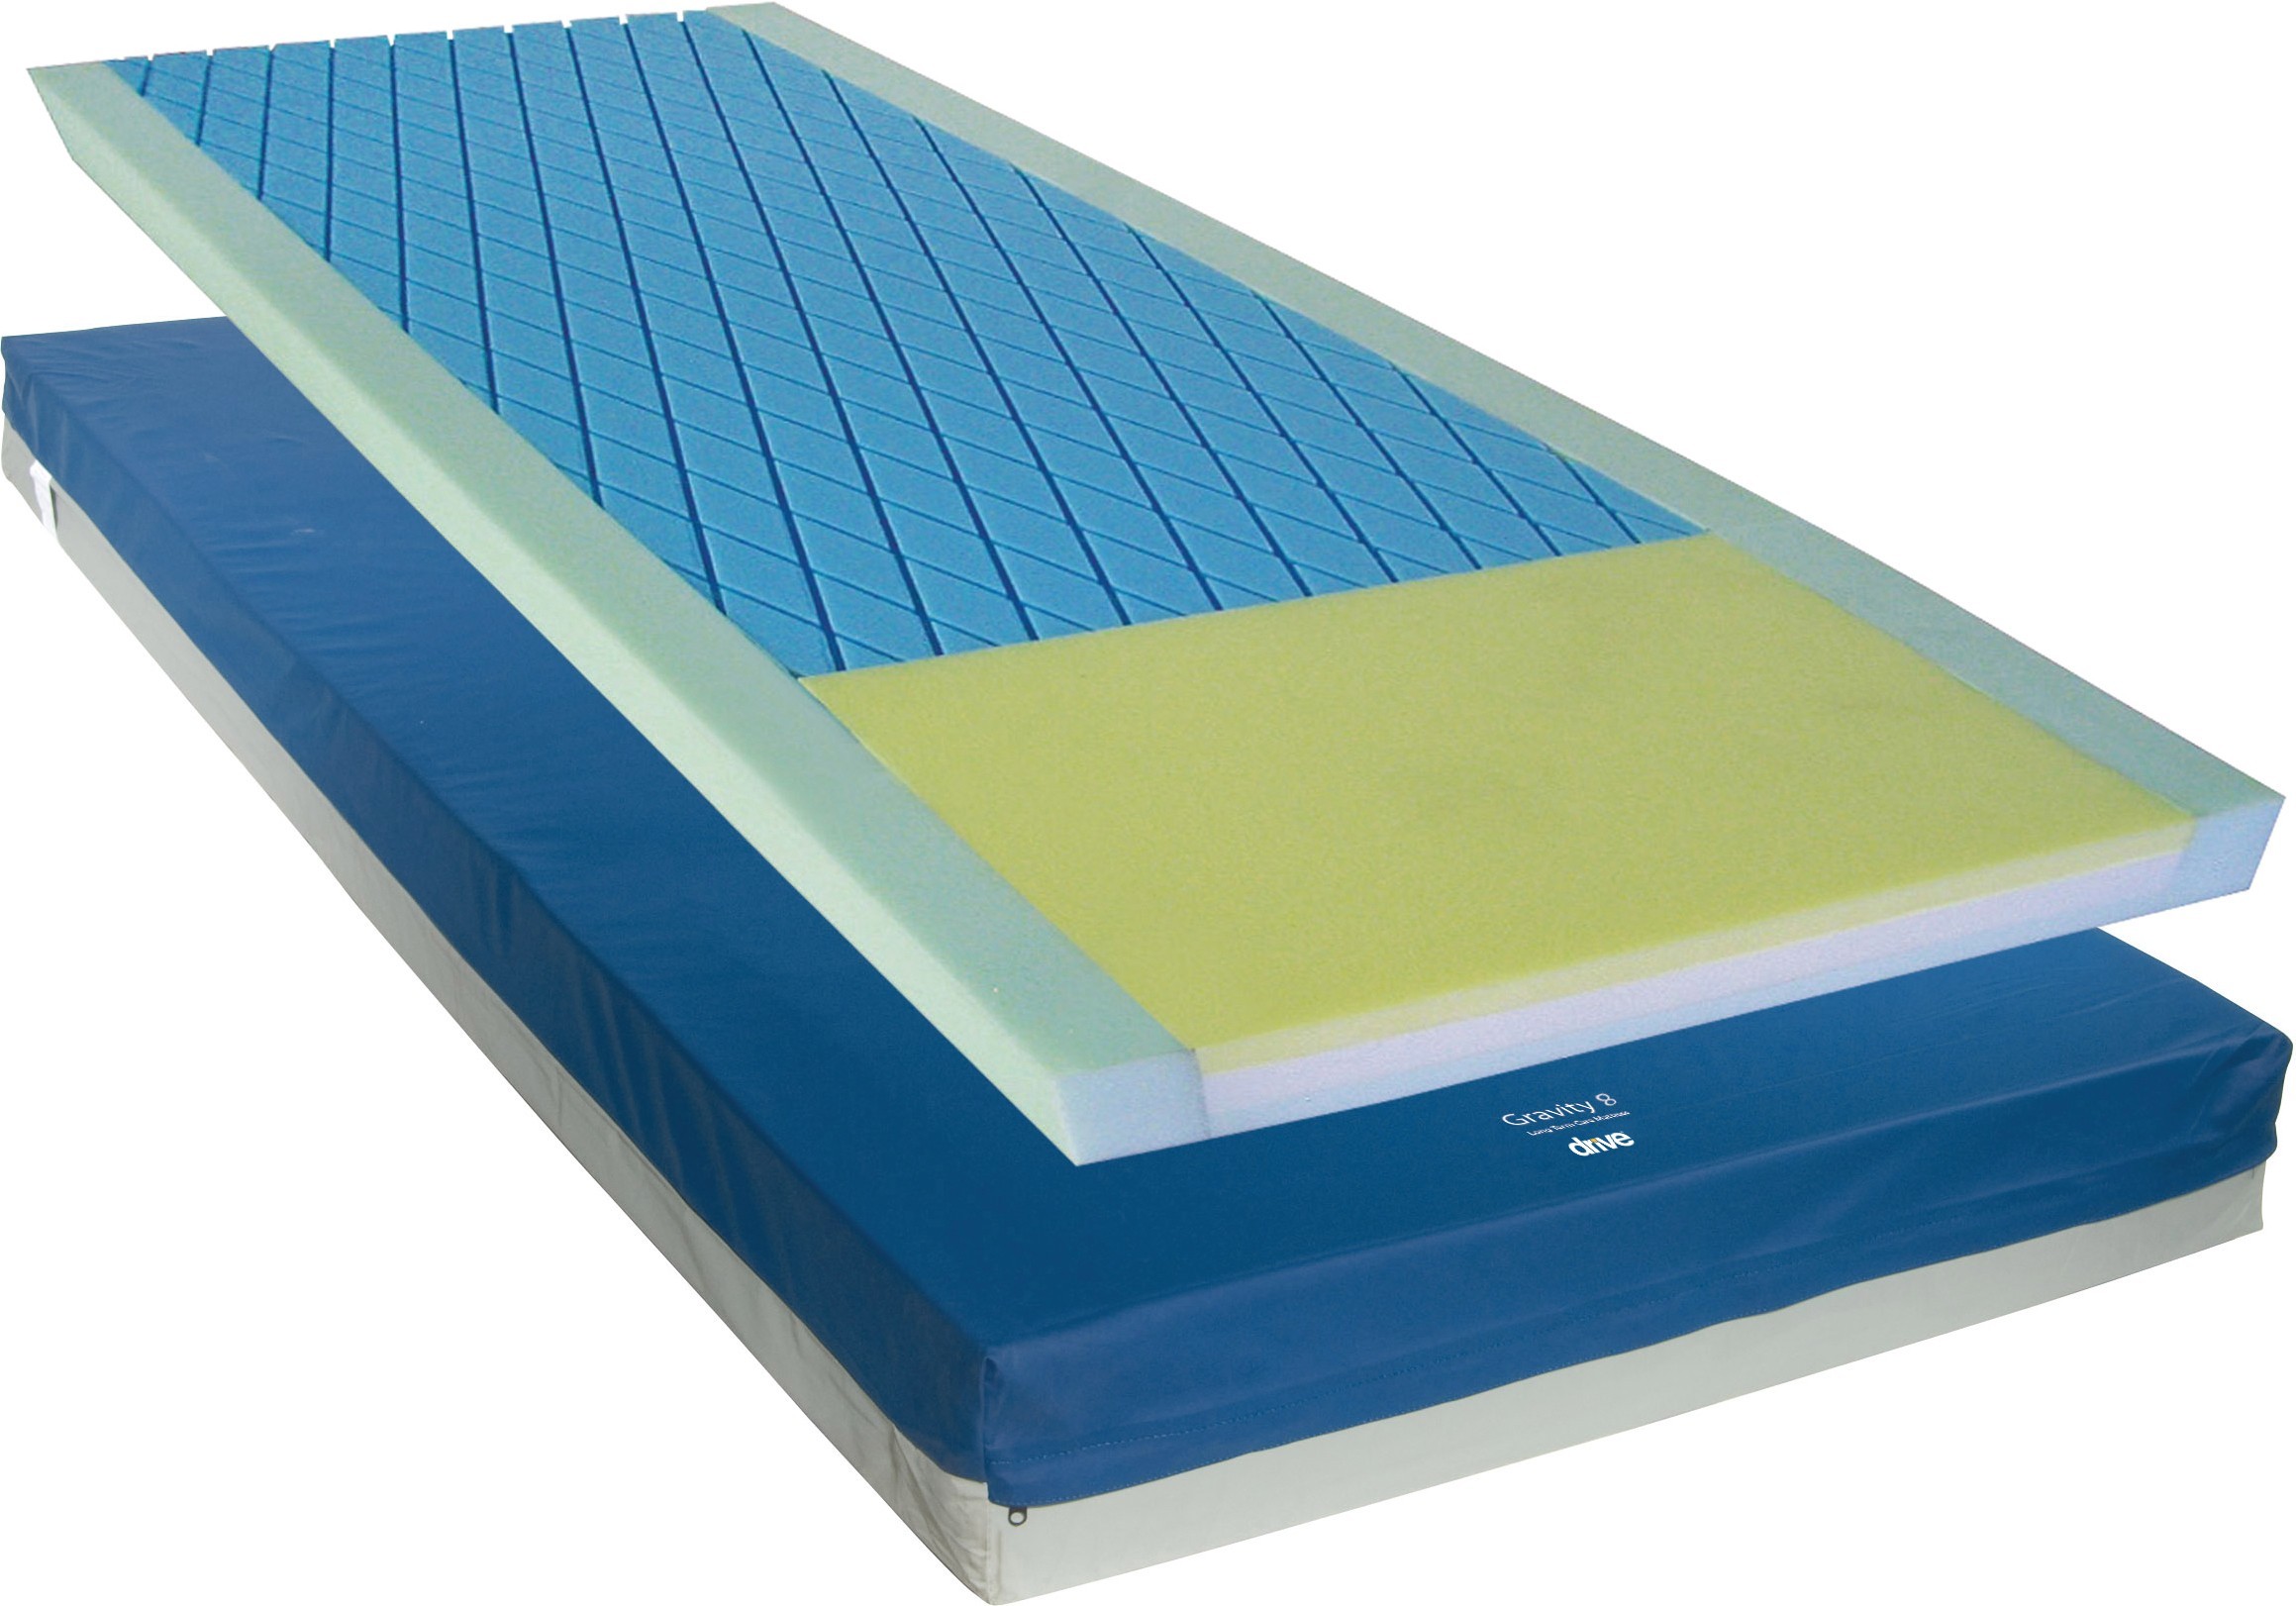 pressure relief mattress topper for sci